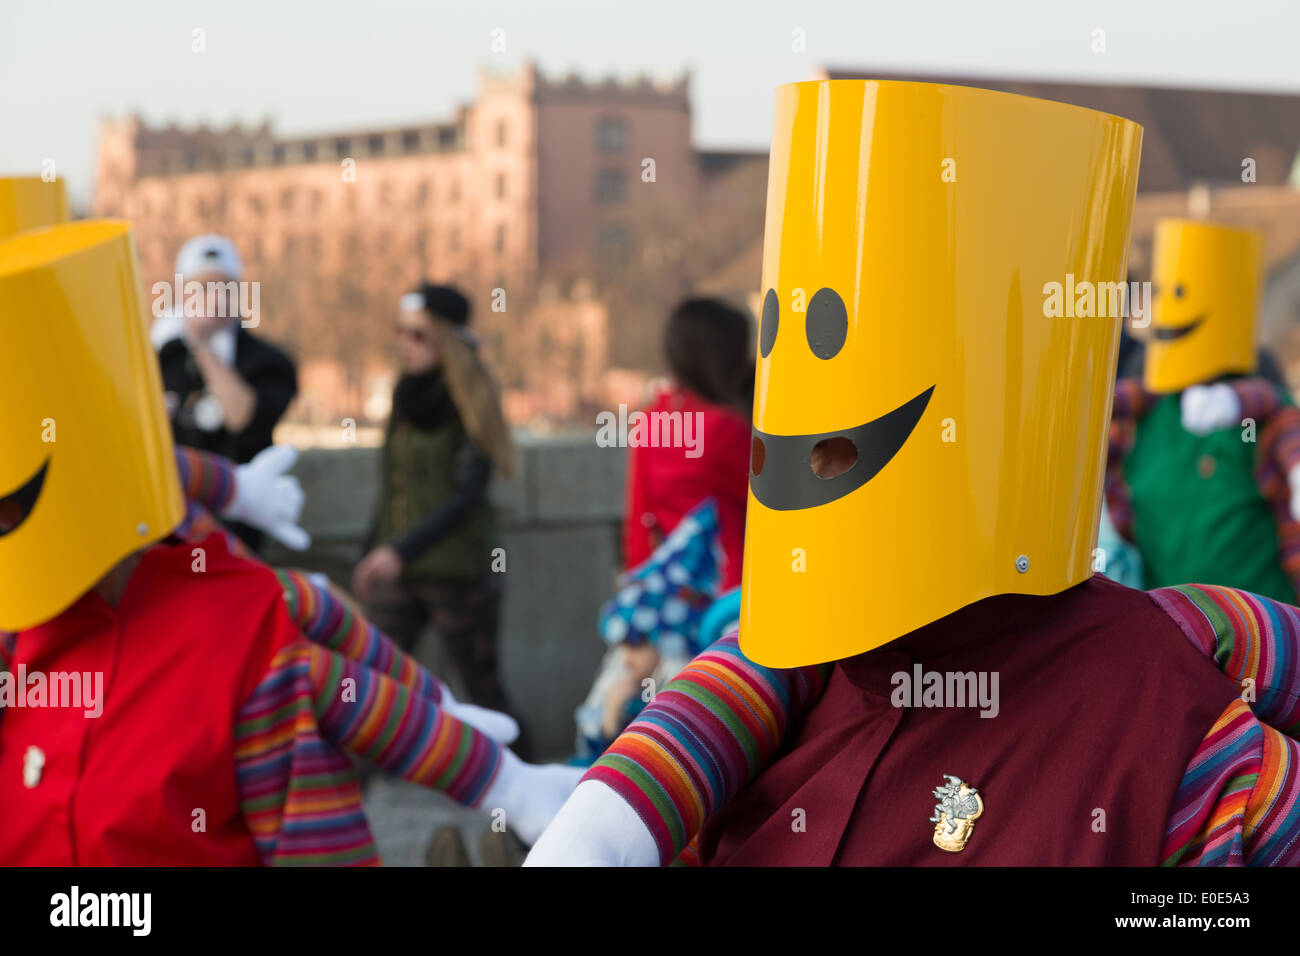 Une photographie de gens portant des costumes de smiley jaune au Carnaval de Bâle en Suisse (carnaval). Banque D'Images